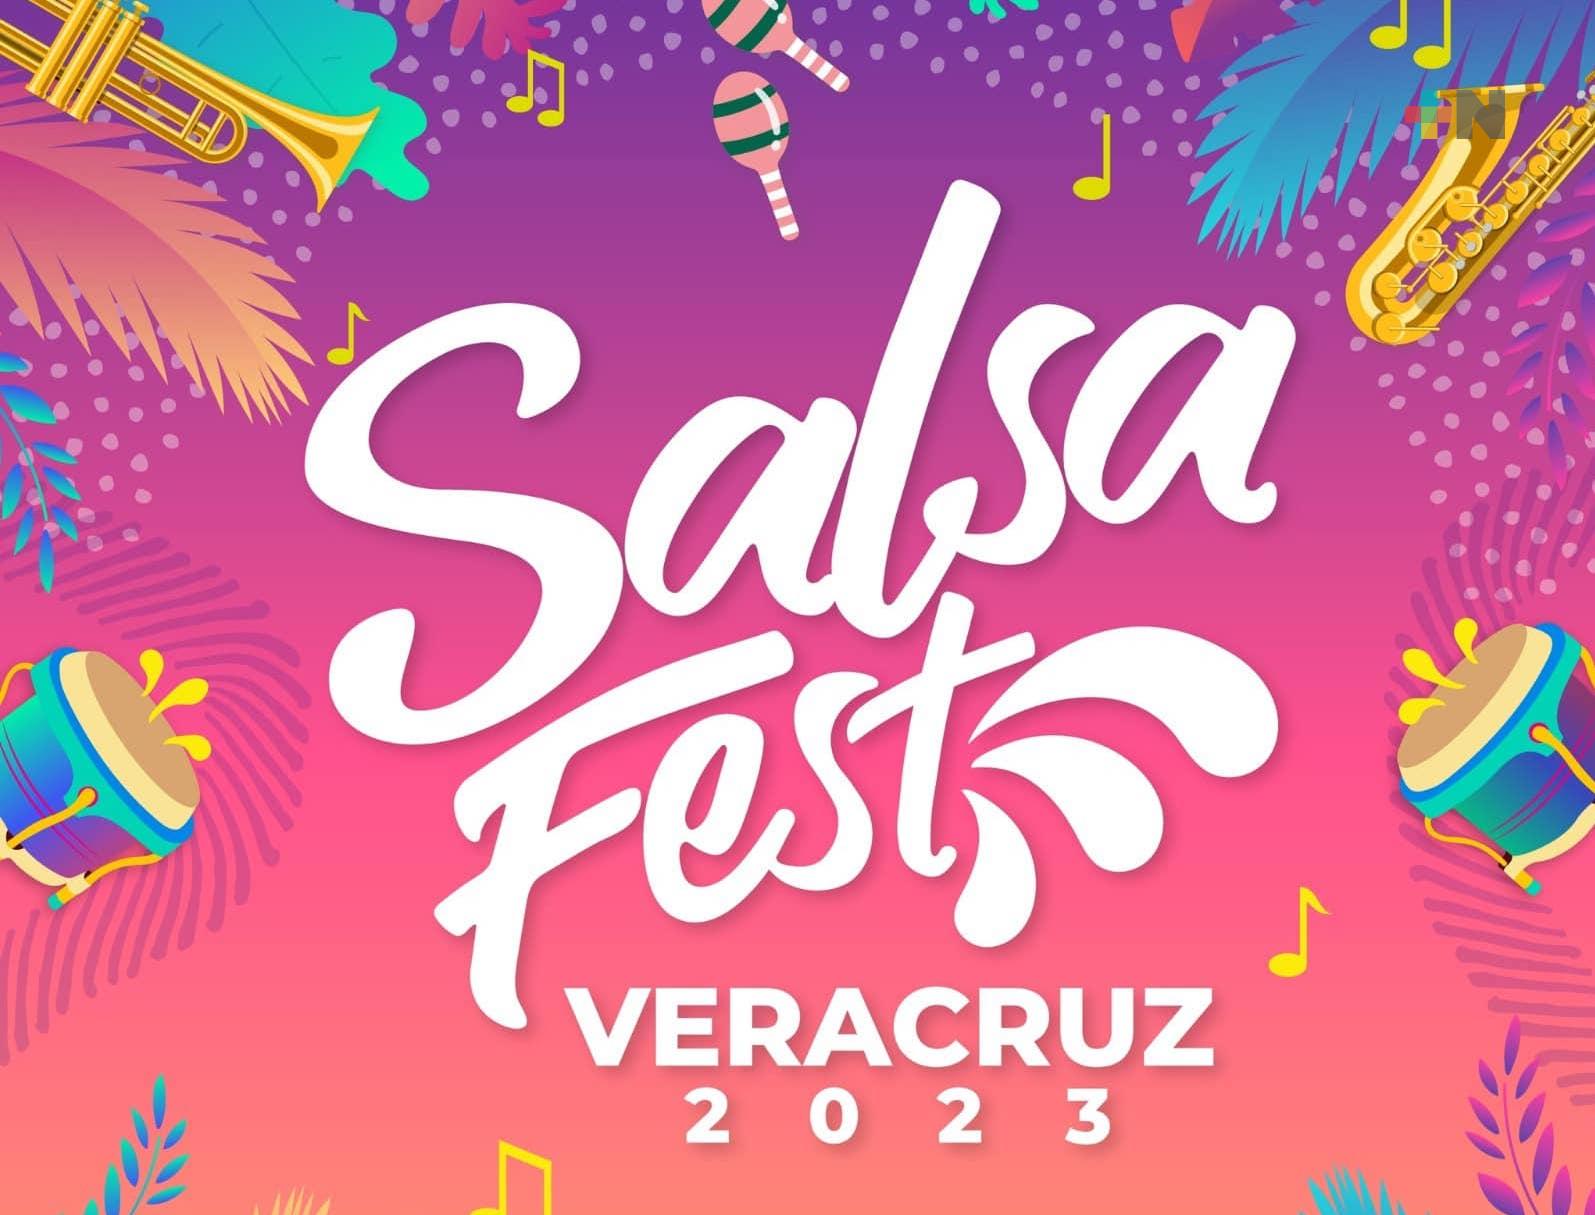 Grupo Niche y Diego Morán «artistas sorpresa» del 3 junio en el Salsa Fest